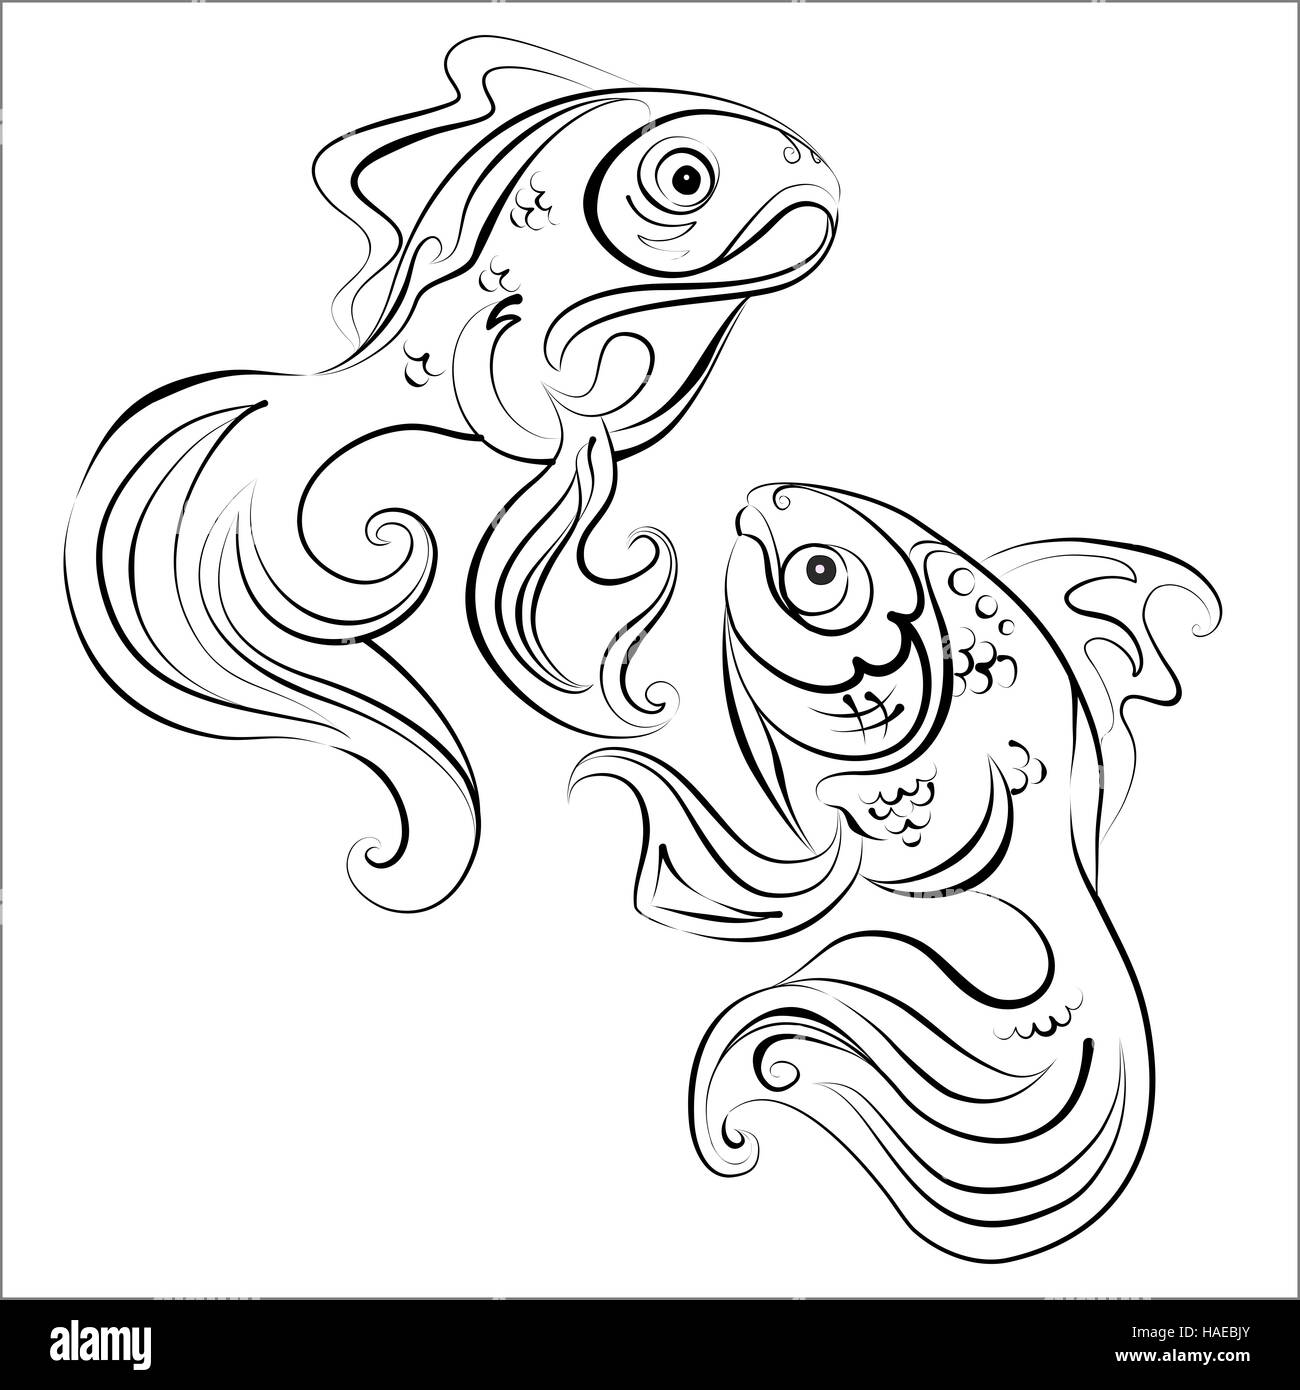 Illustrazione di due stilizzata pesce dorato con nessun colore di riempimento Foto Stock